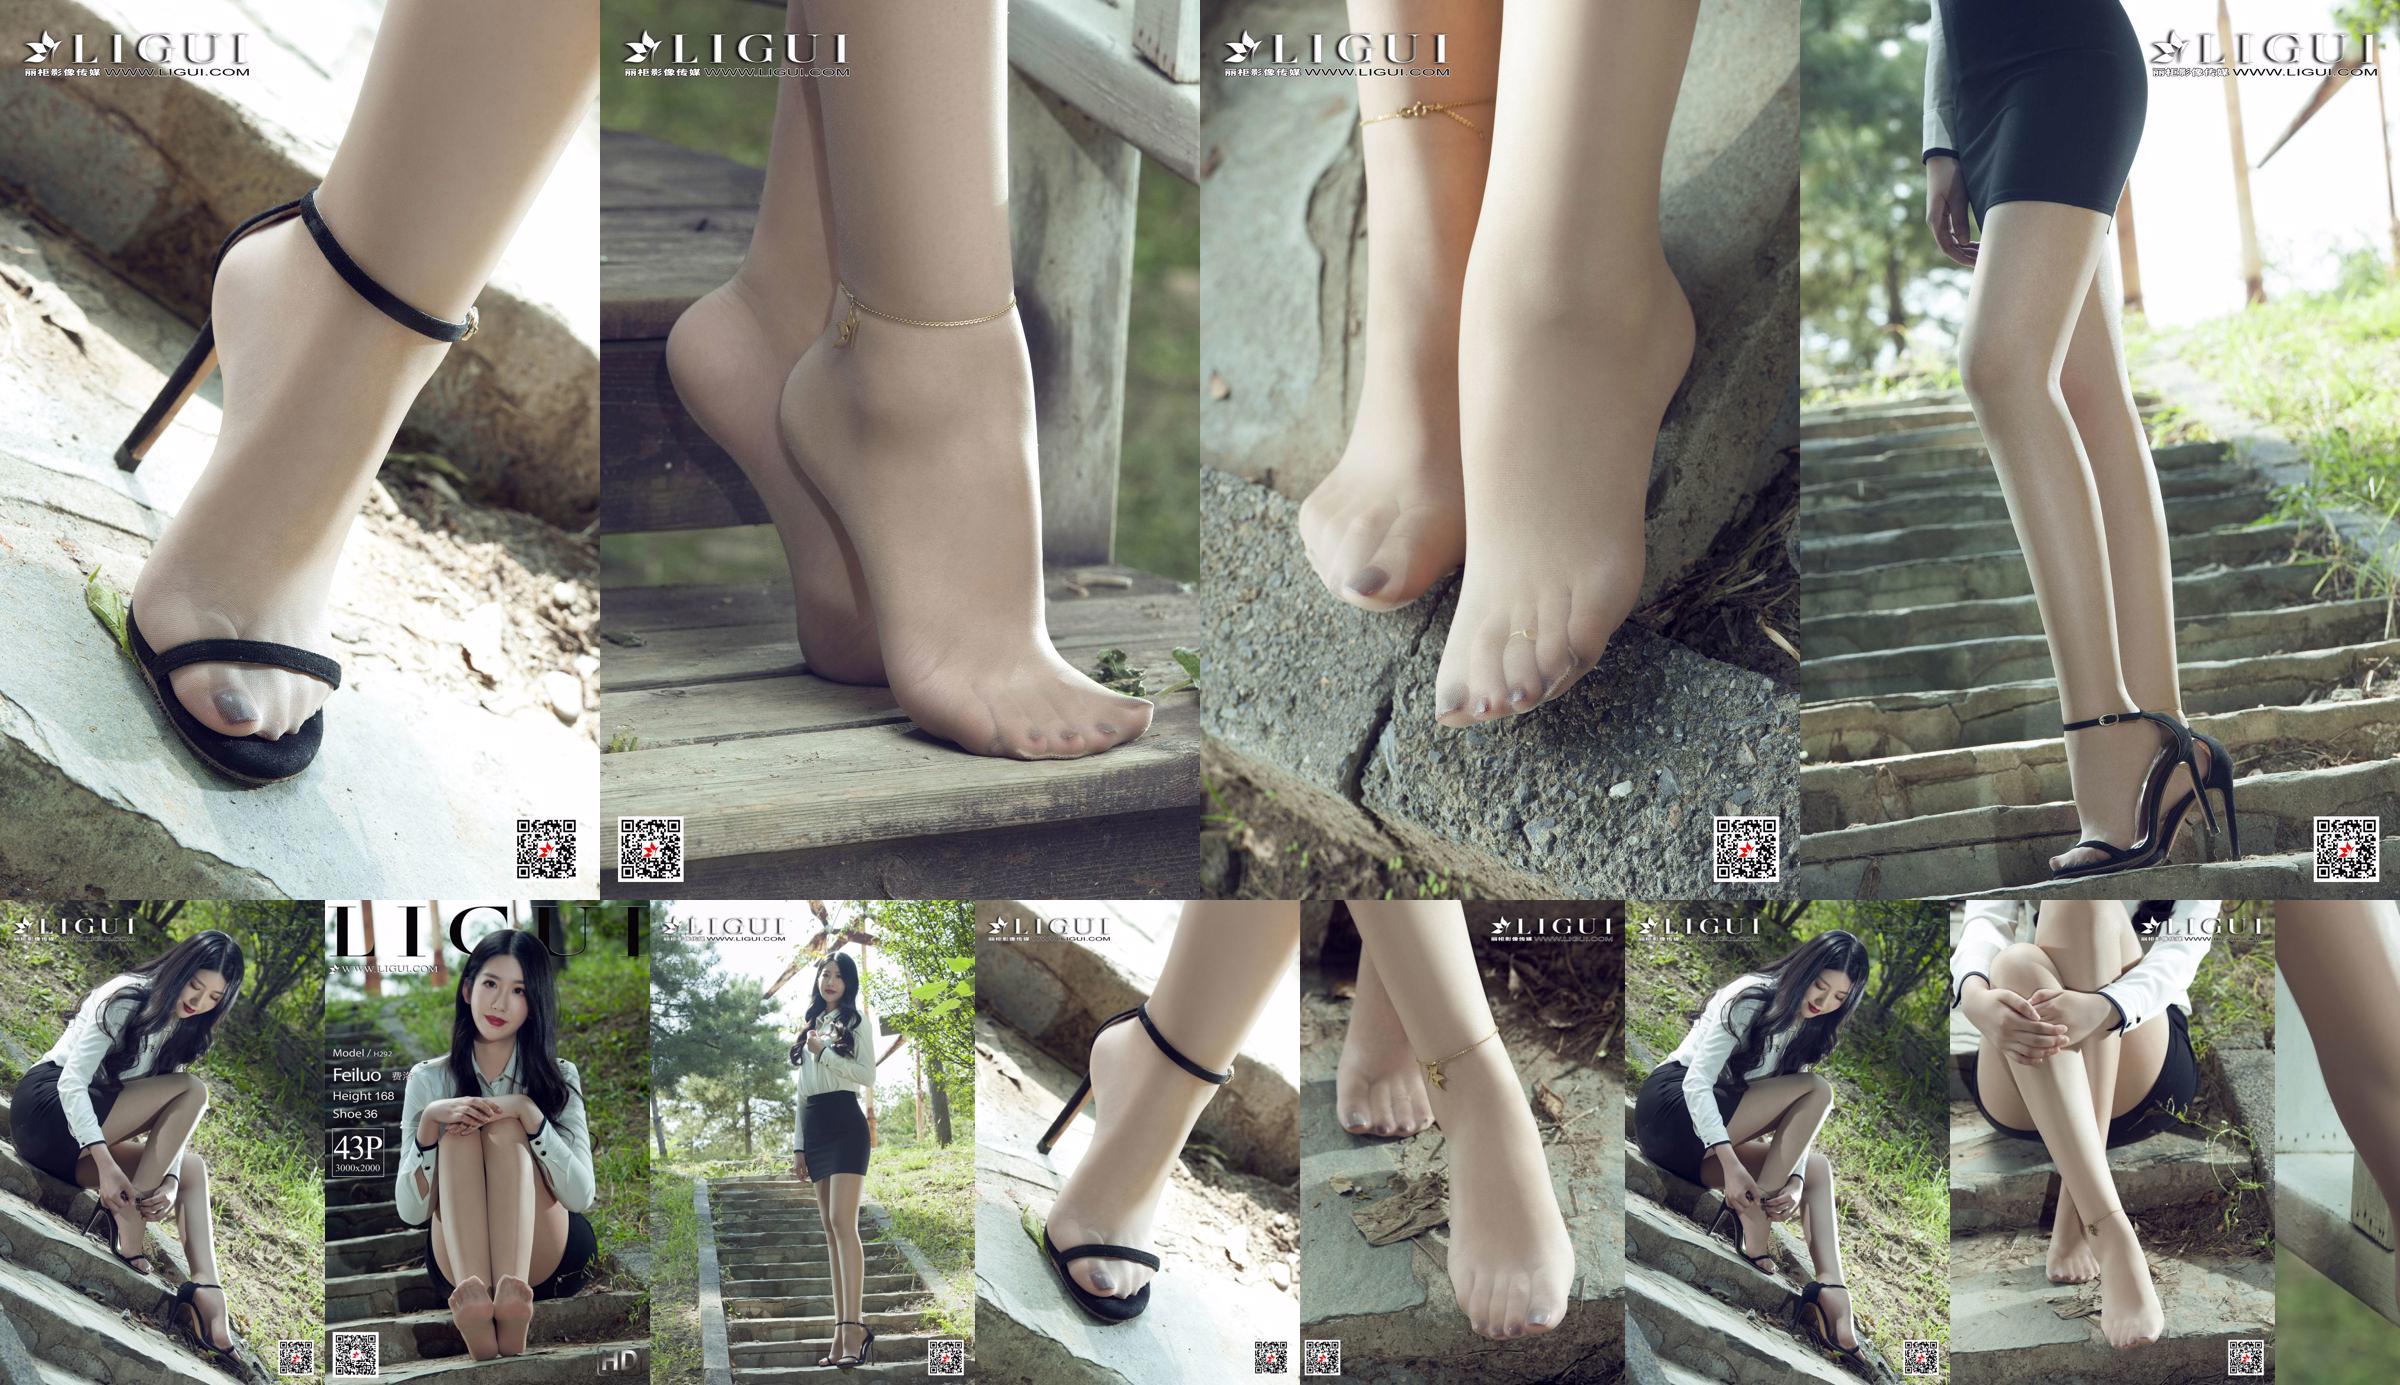 นางแบบ Fei Luo "The Best Legs in Stockings" [Ligui Ligui] No.1c1dc3 หน้า 1